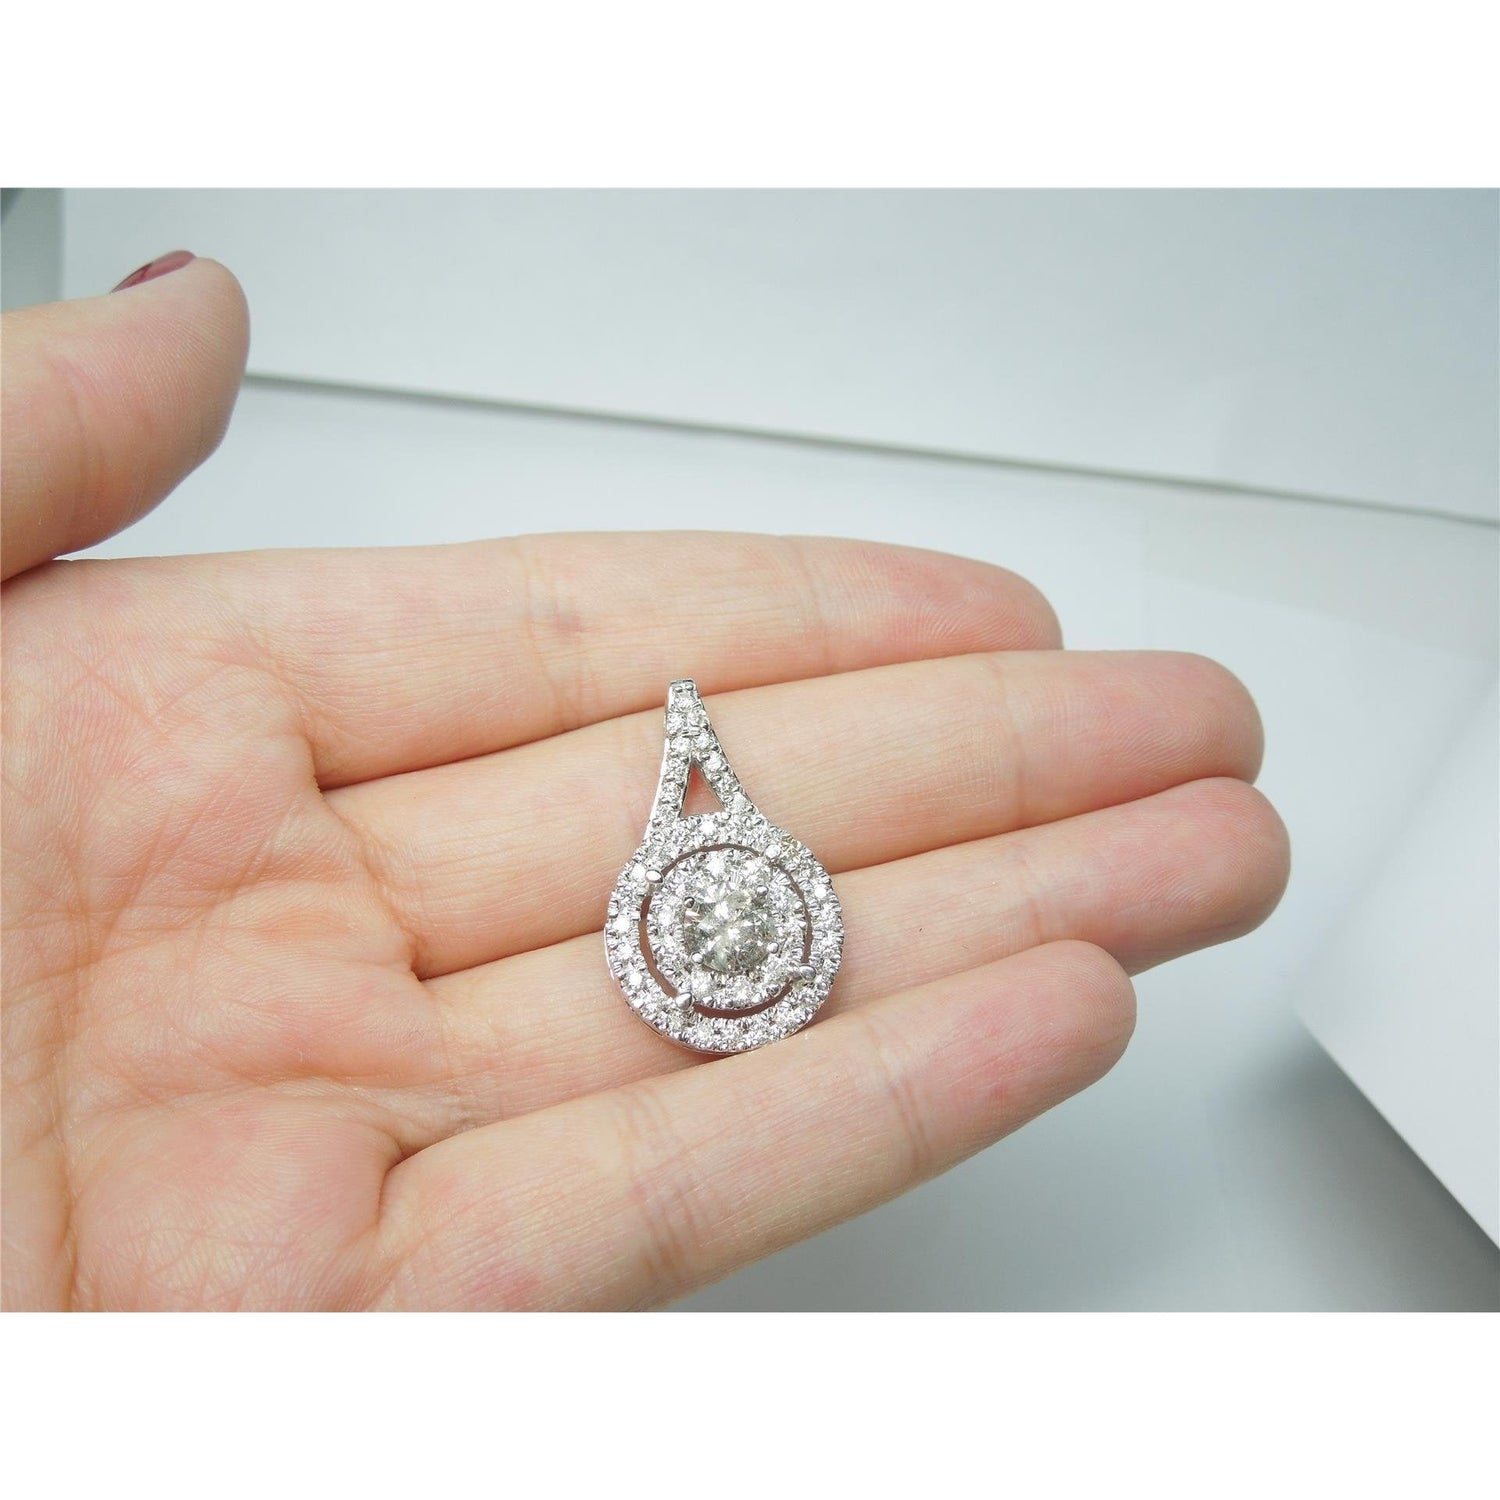 Collier Grand Pendentif Réel Diamants Ronds Etincelants De 1.33 Ct En Or Blanc